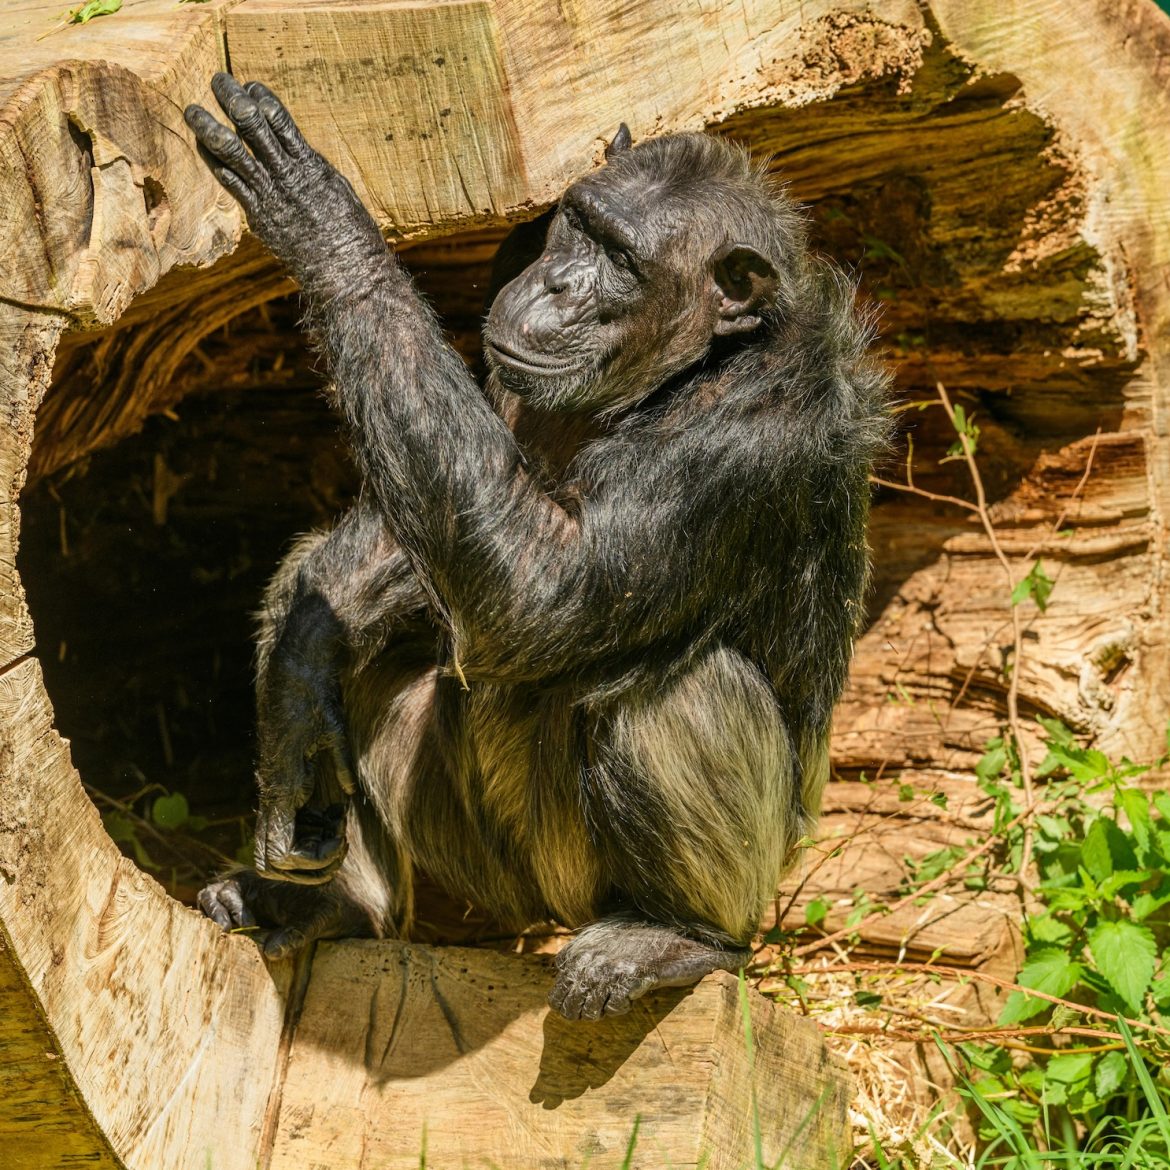 Moederchimpansee kan geen afscheid nemen: tilt al 3 maanden overleden jong op haar rug